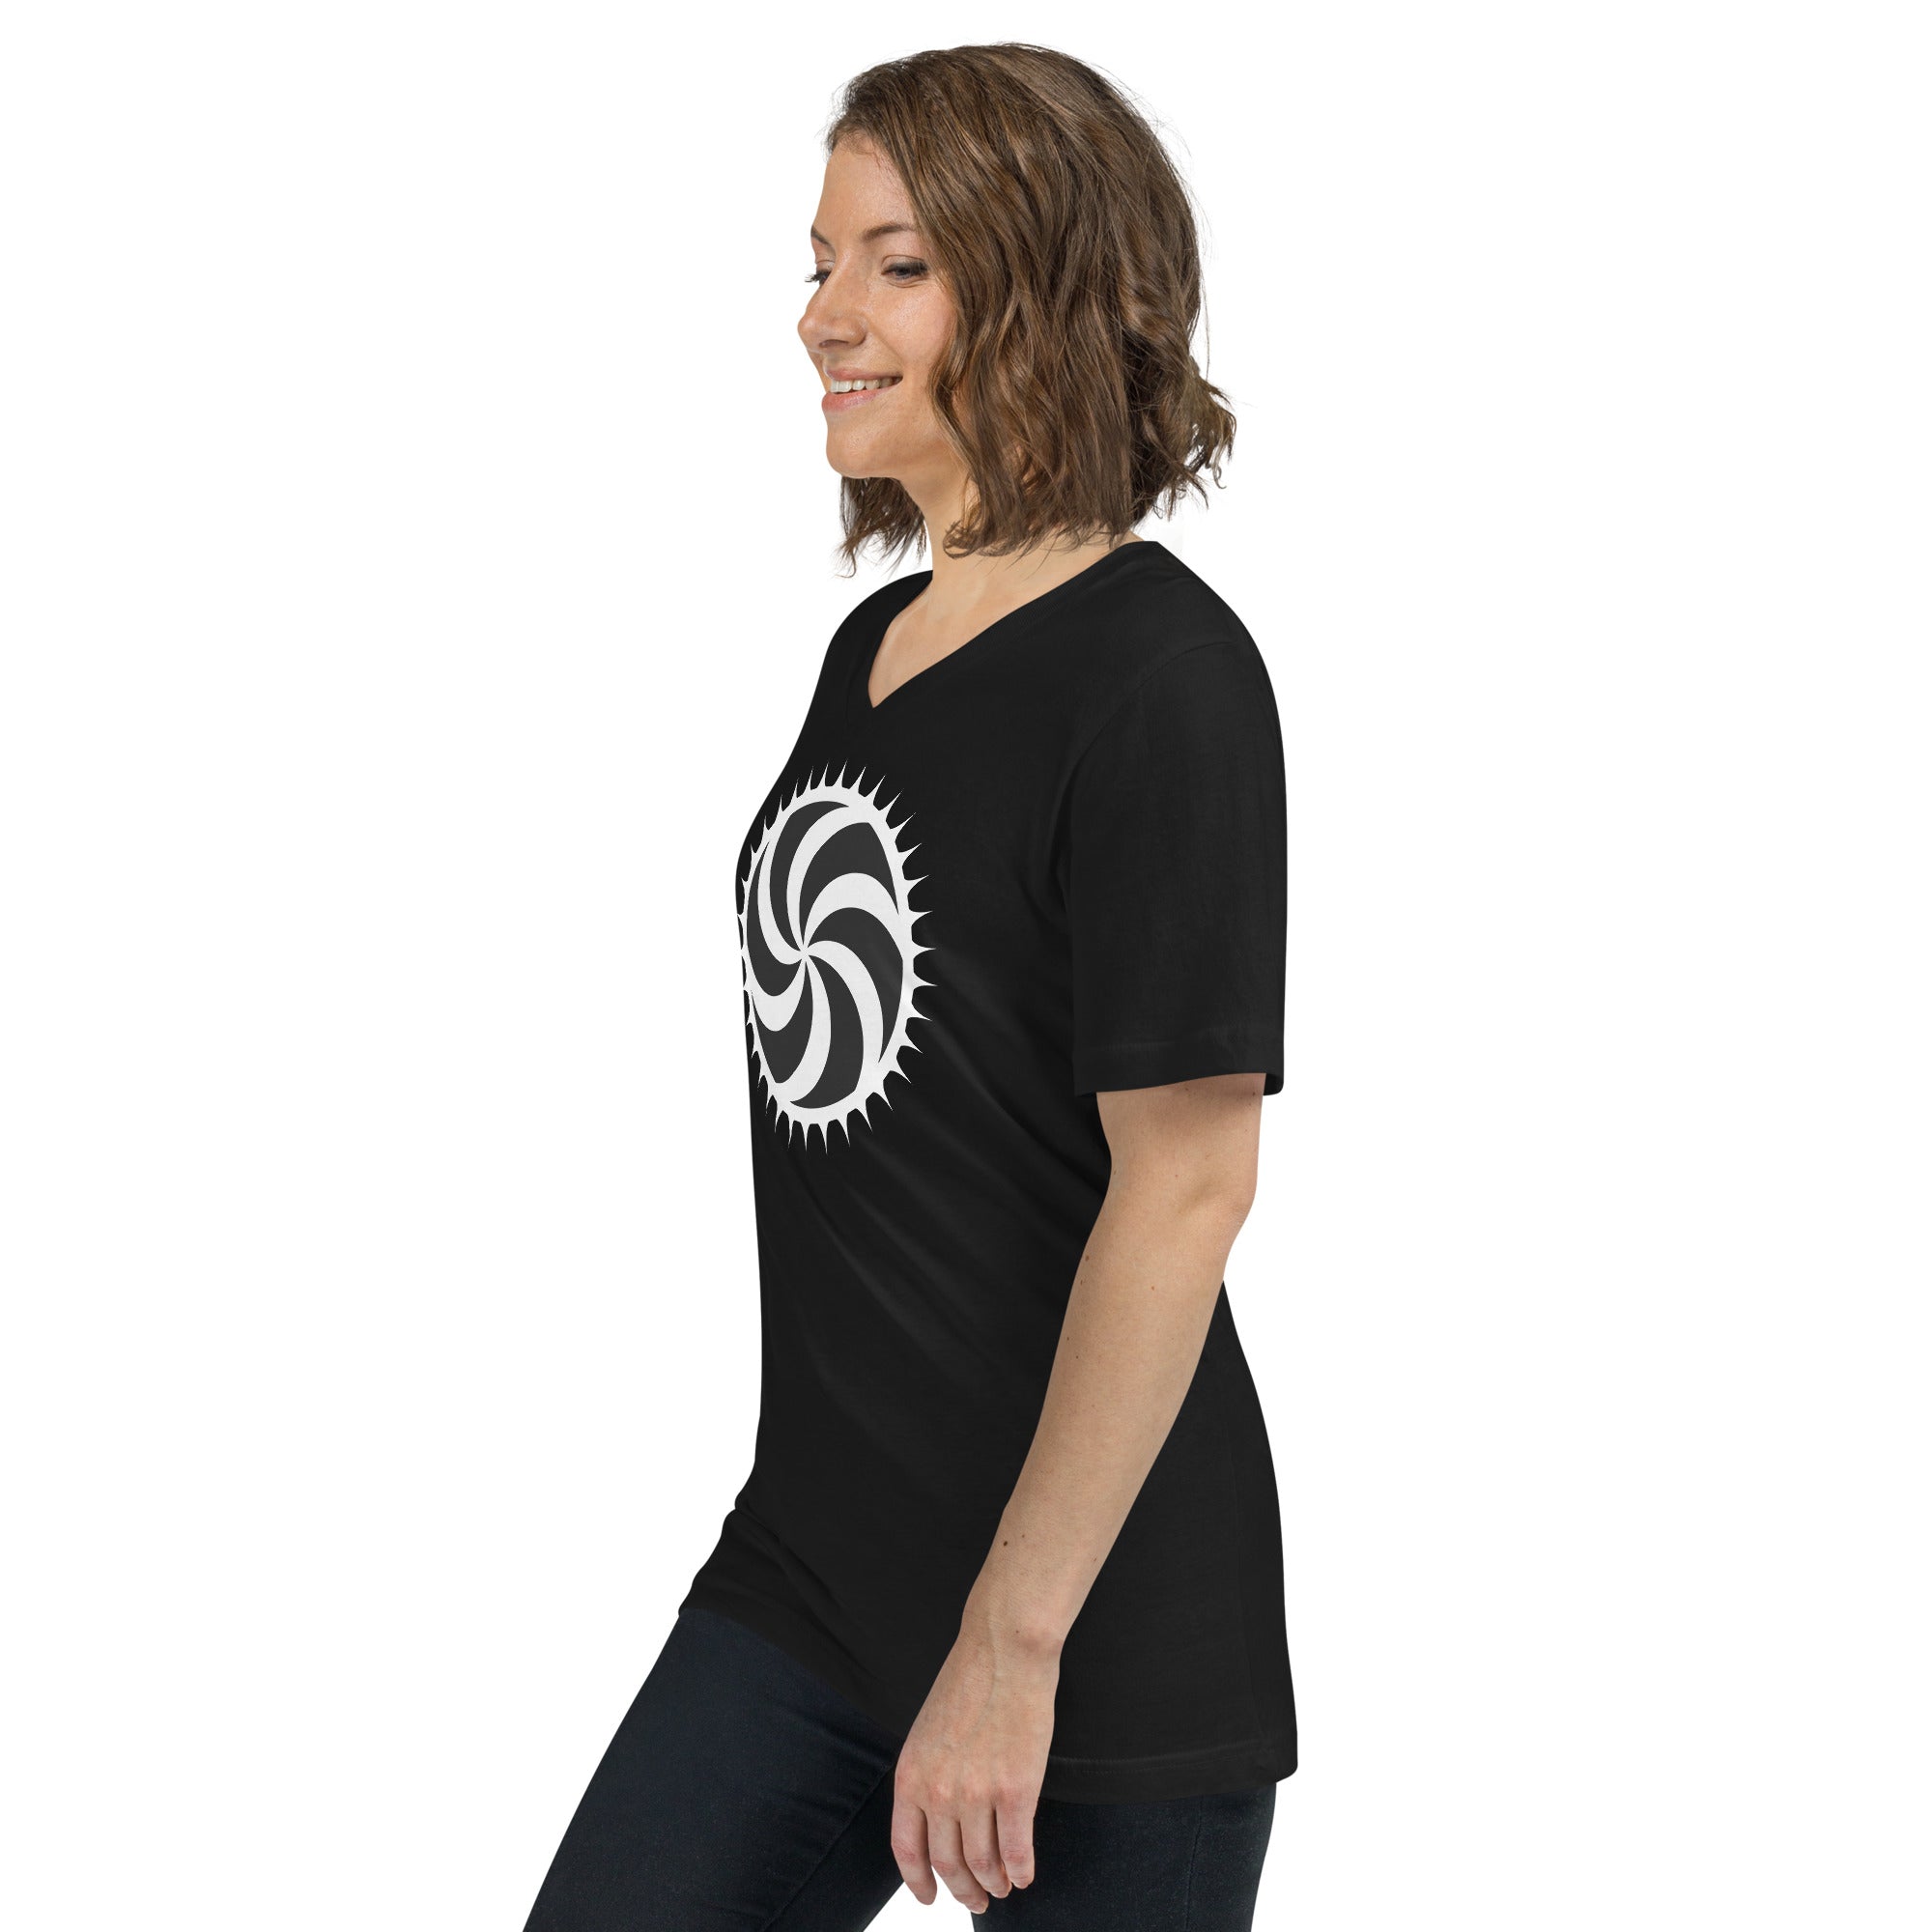 White Deadly Swirl Spike Alchemy Symbol Short Sleeve V-Neck T-Shirt